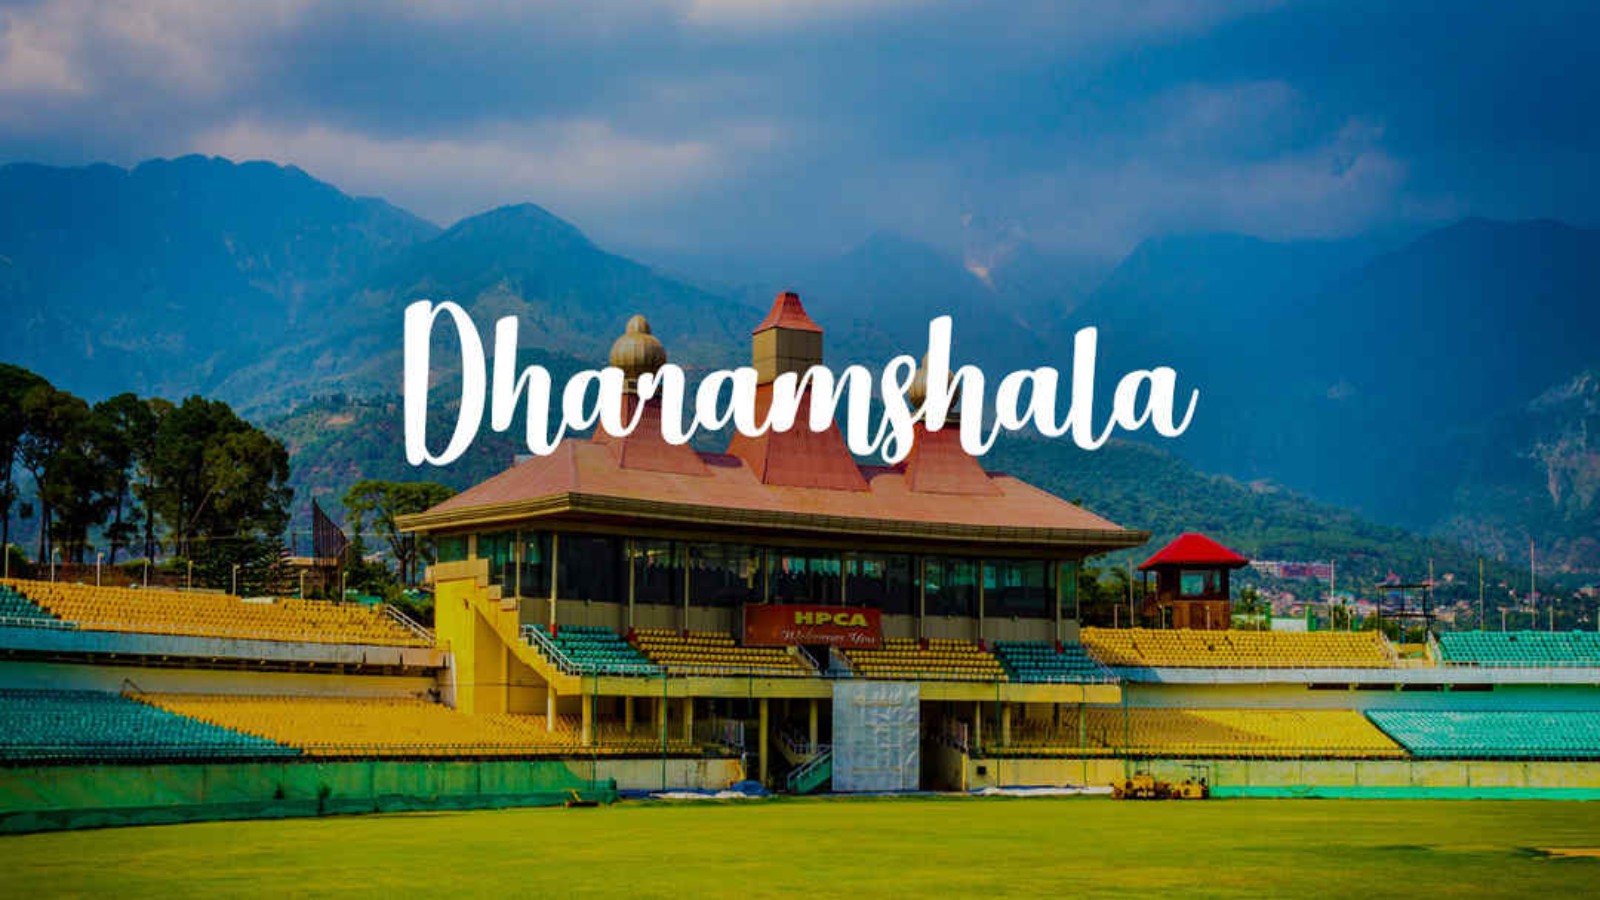 Dharmshala